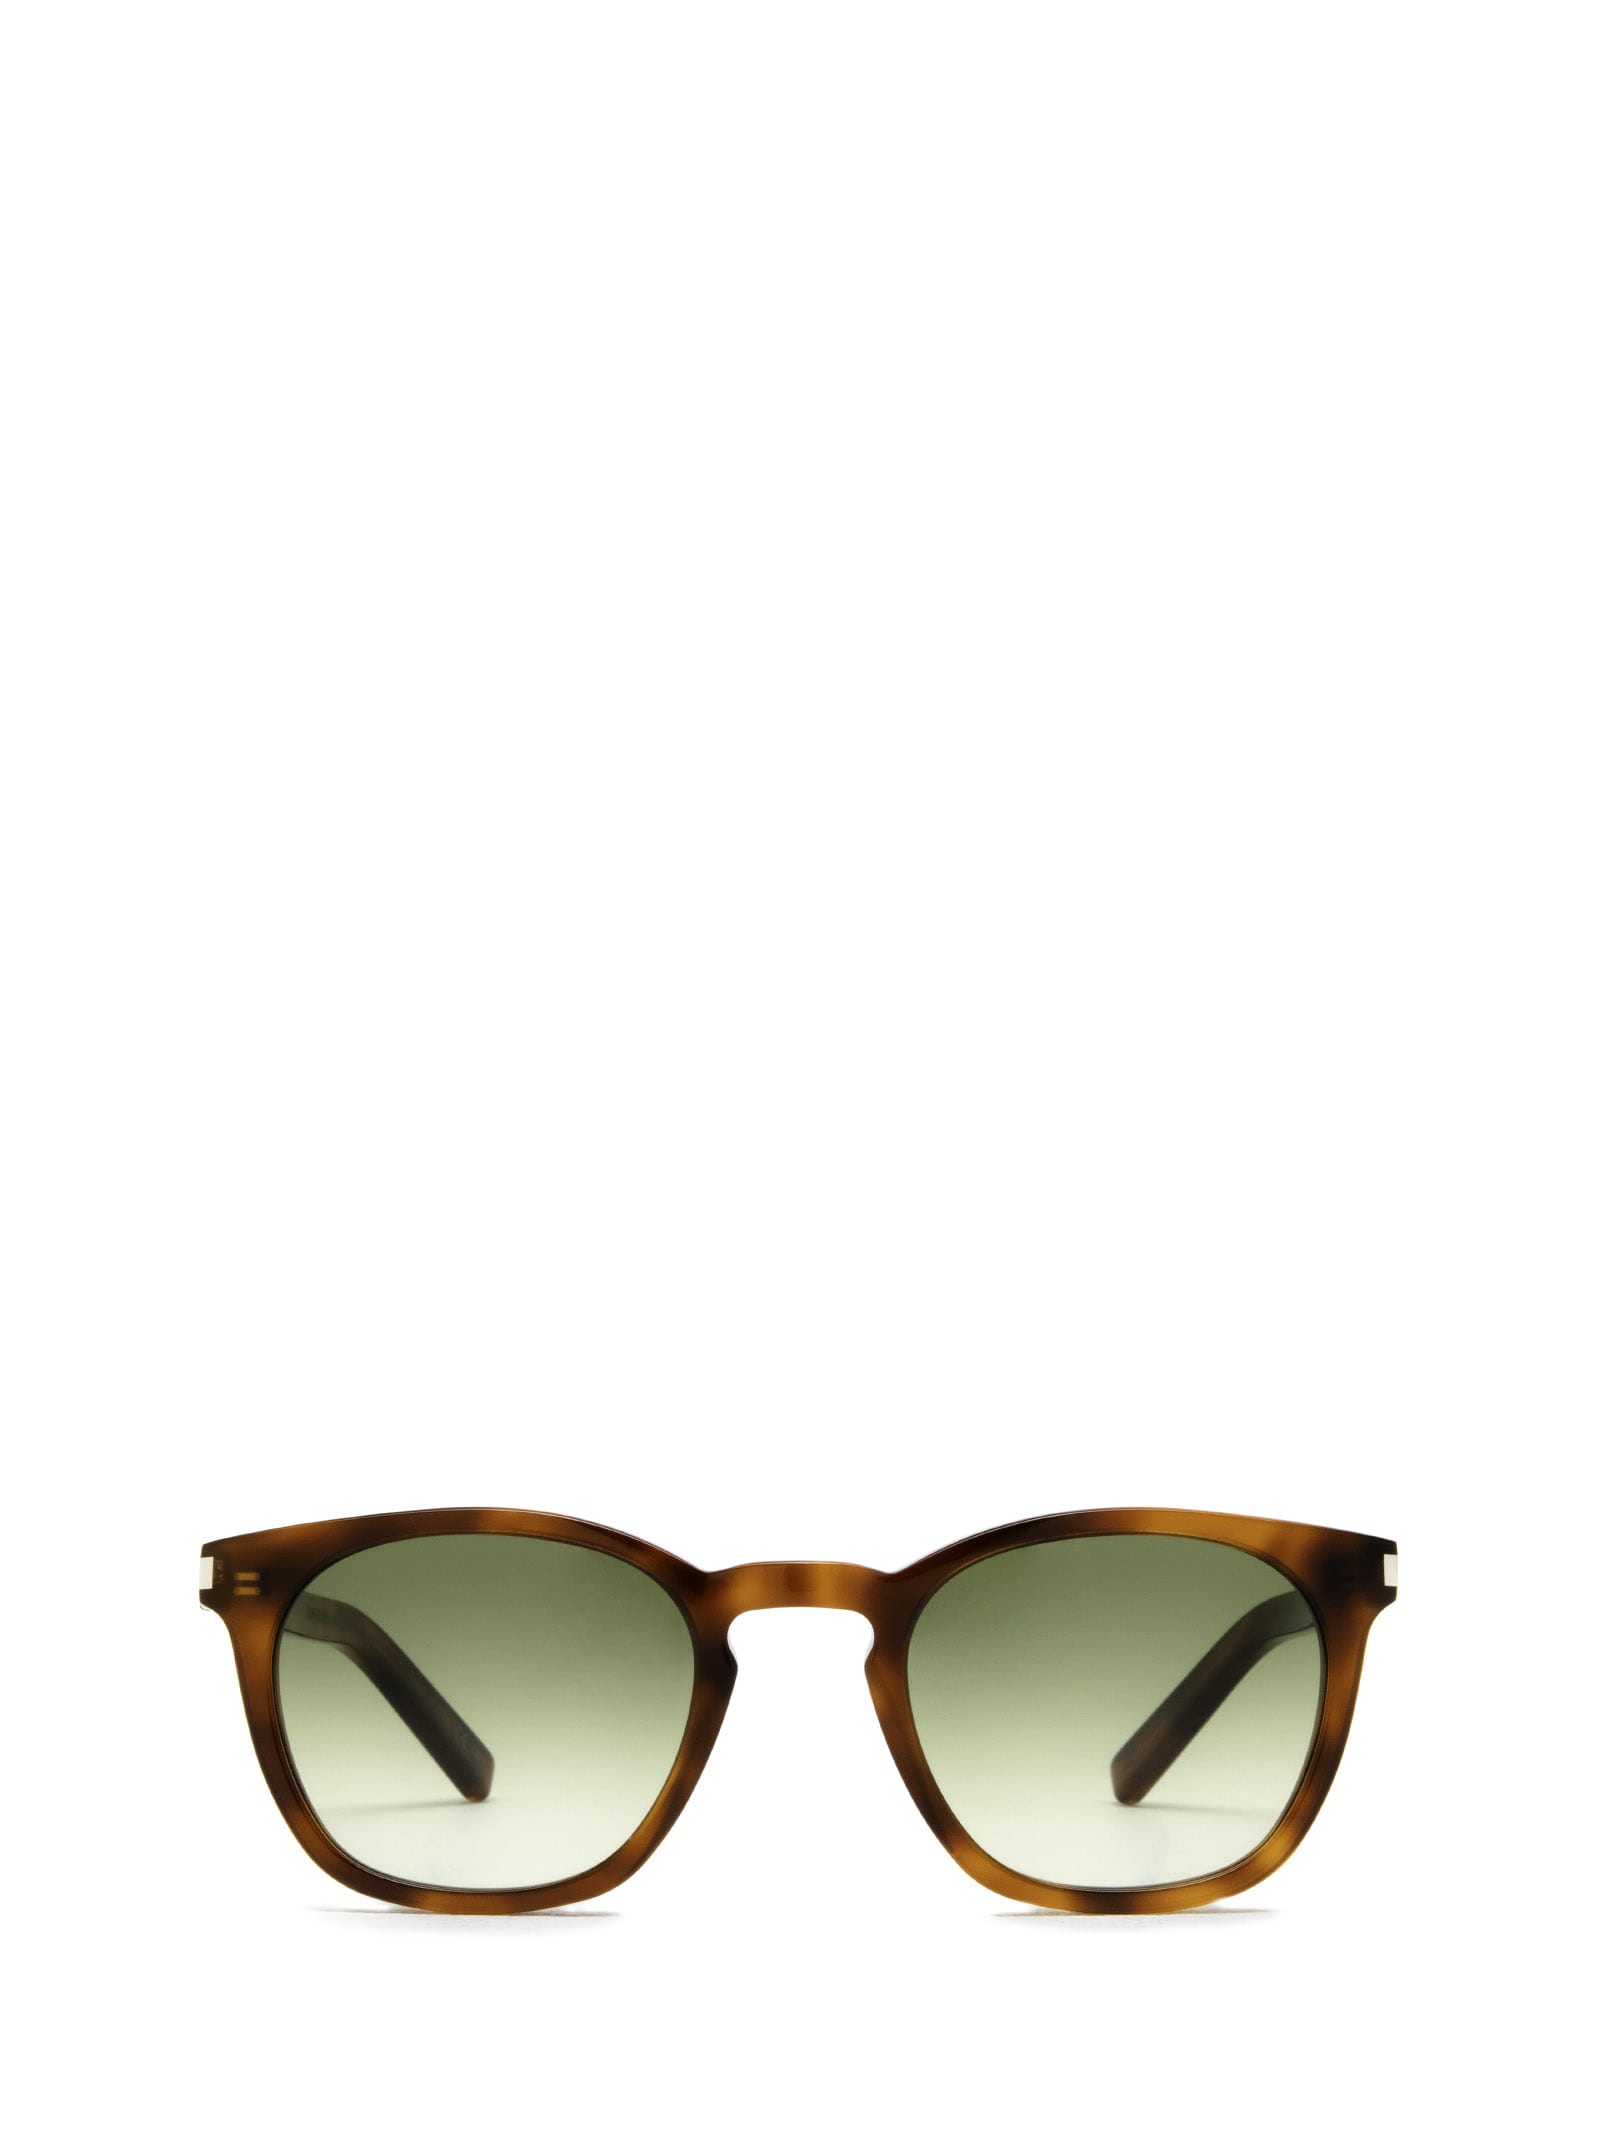 Saint Laurent Eyewear Sl 28 Havana Sunglasses